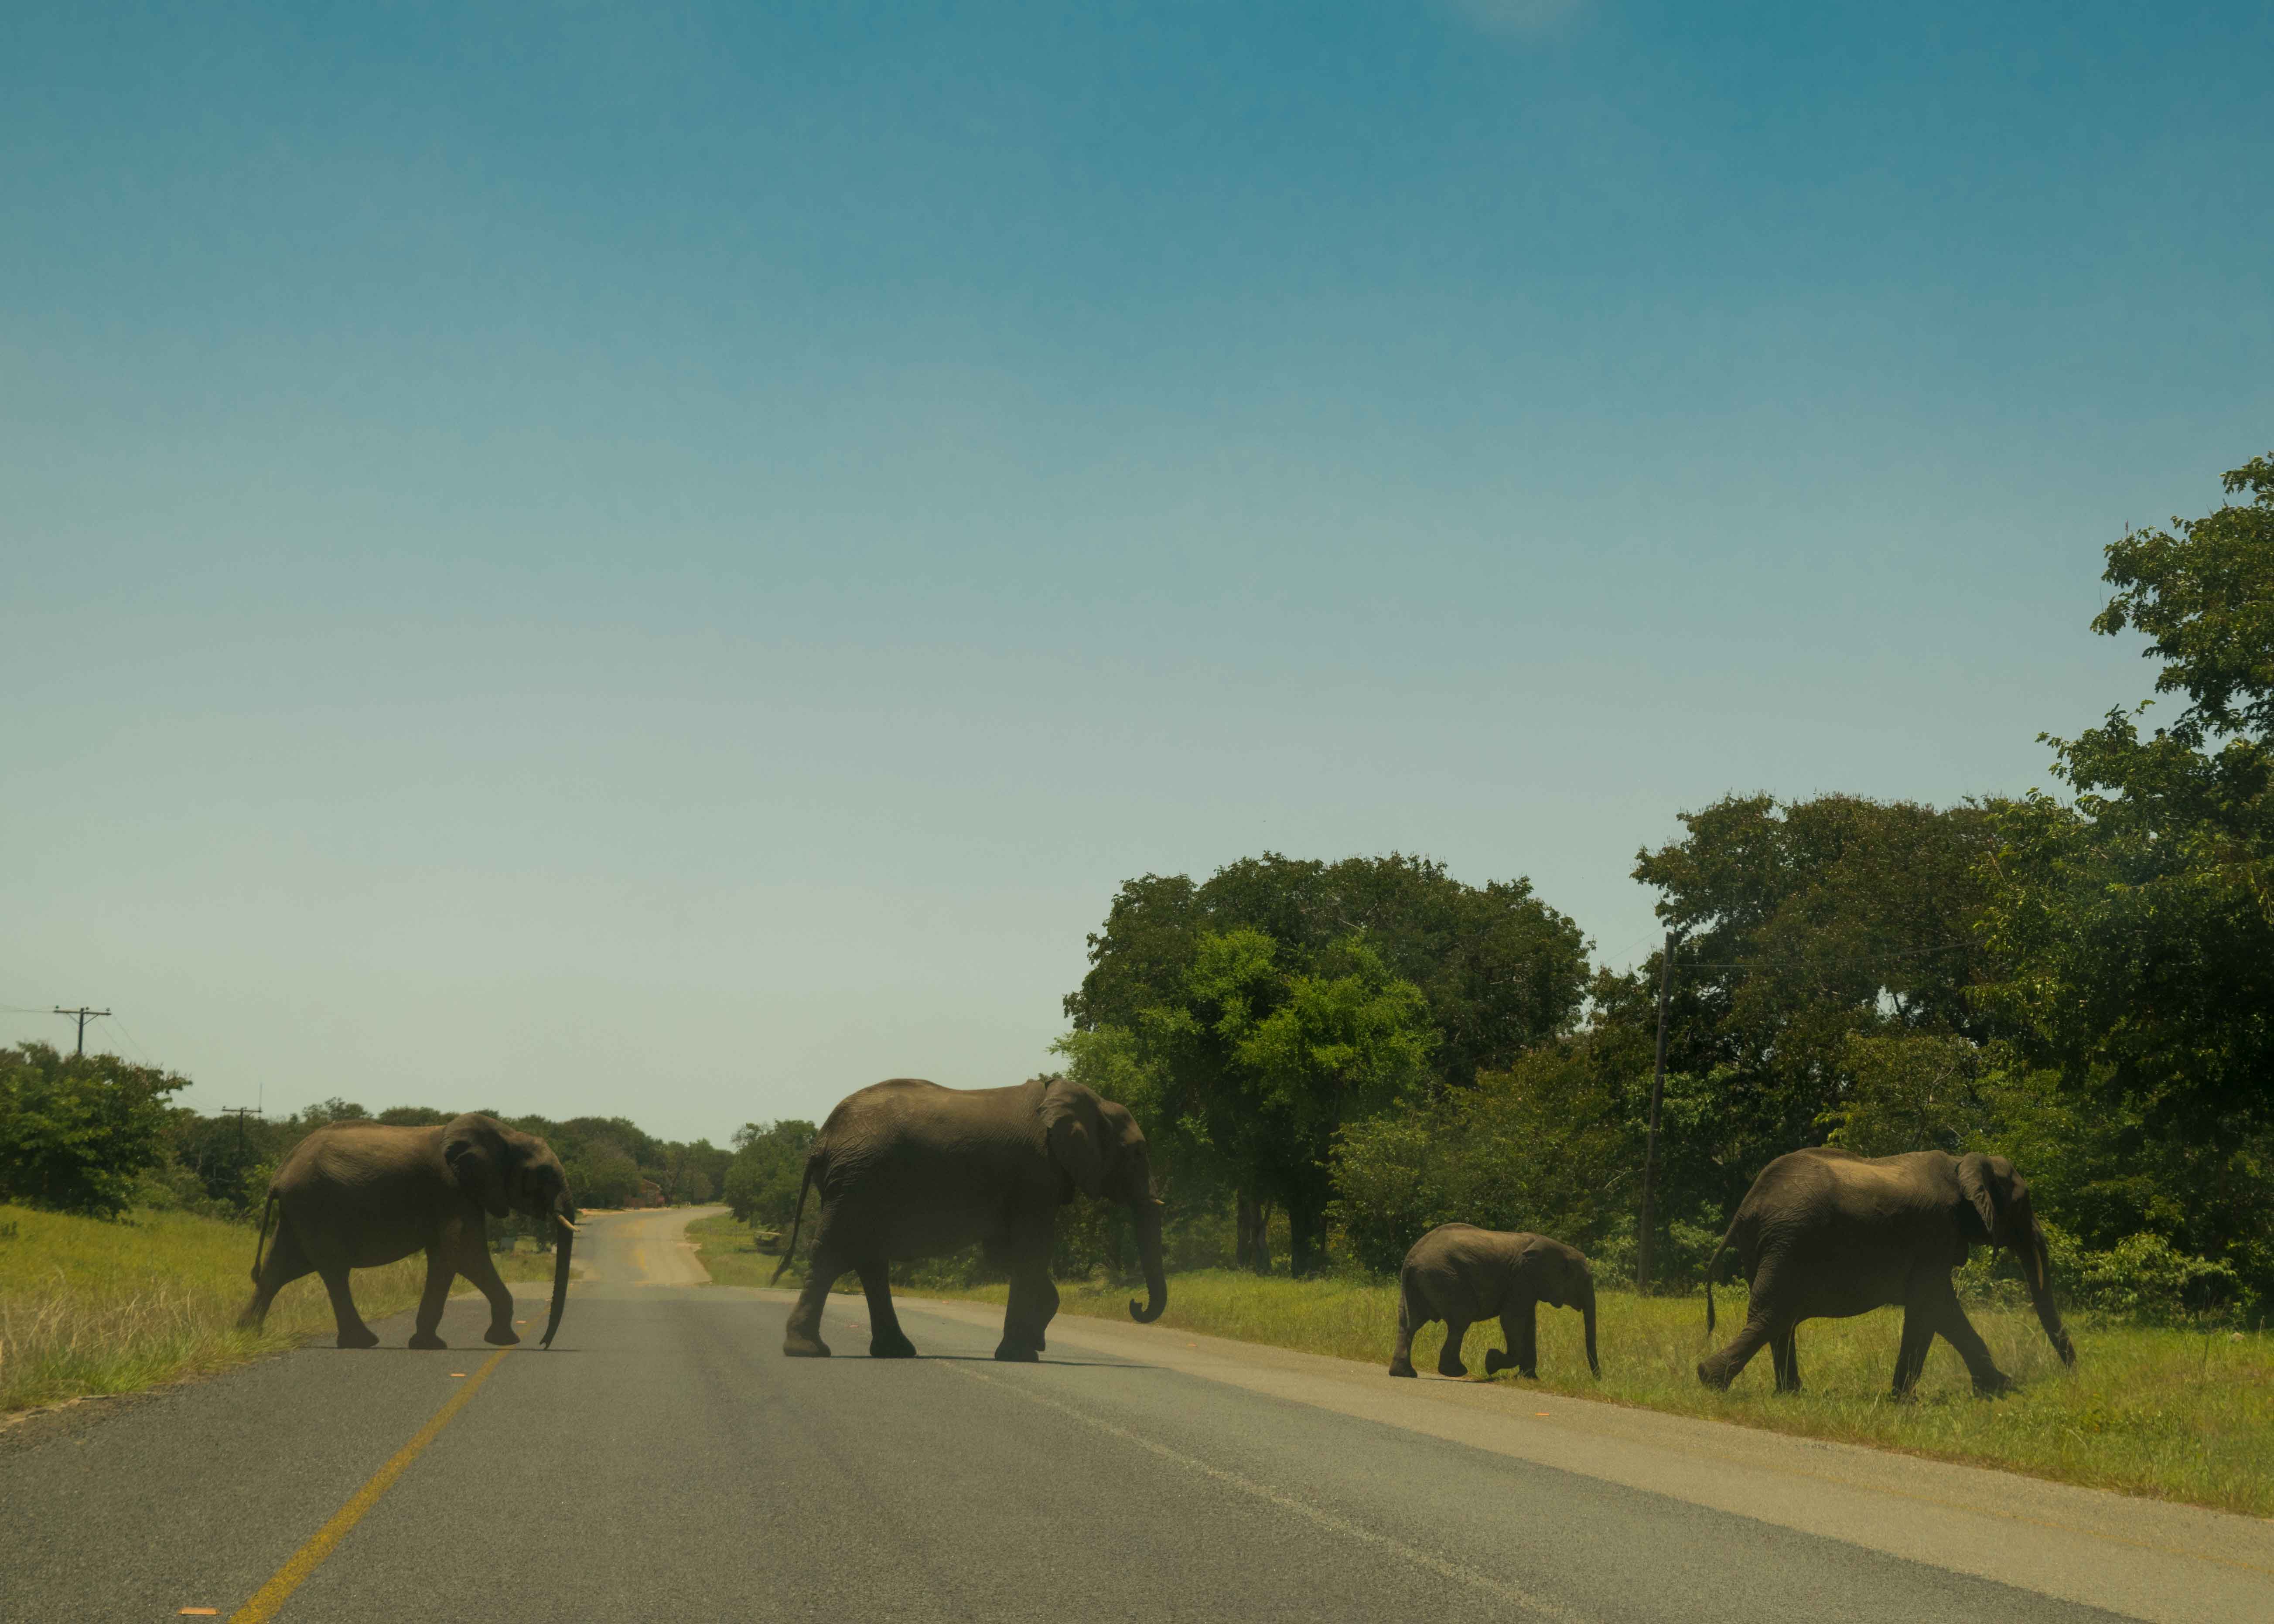 Elefantes cruzando a estrada no caminho para Victoria Falls Zambia.